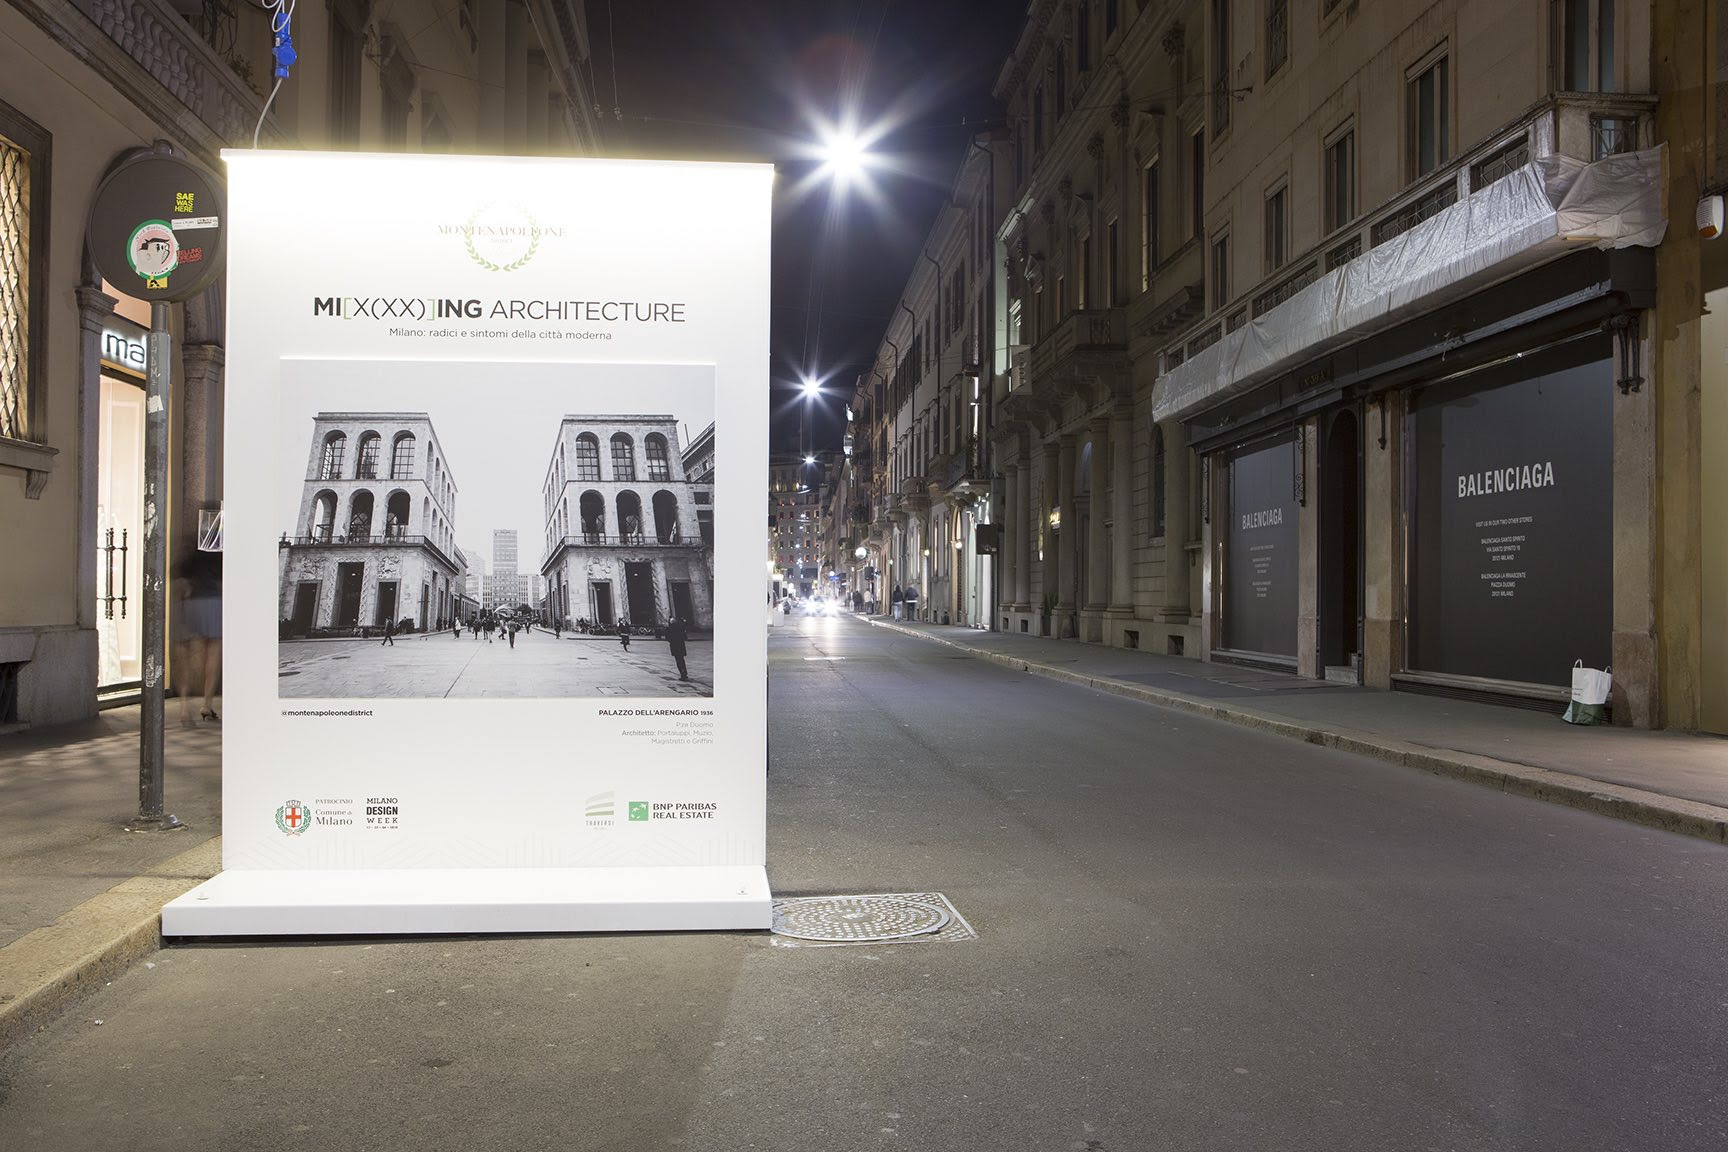 Mi[x(xx)]ing Architecture - Milano: radici e sintomi della città moderna